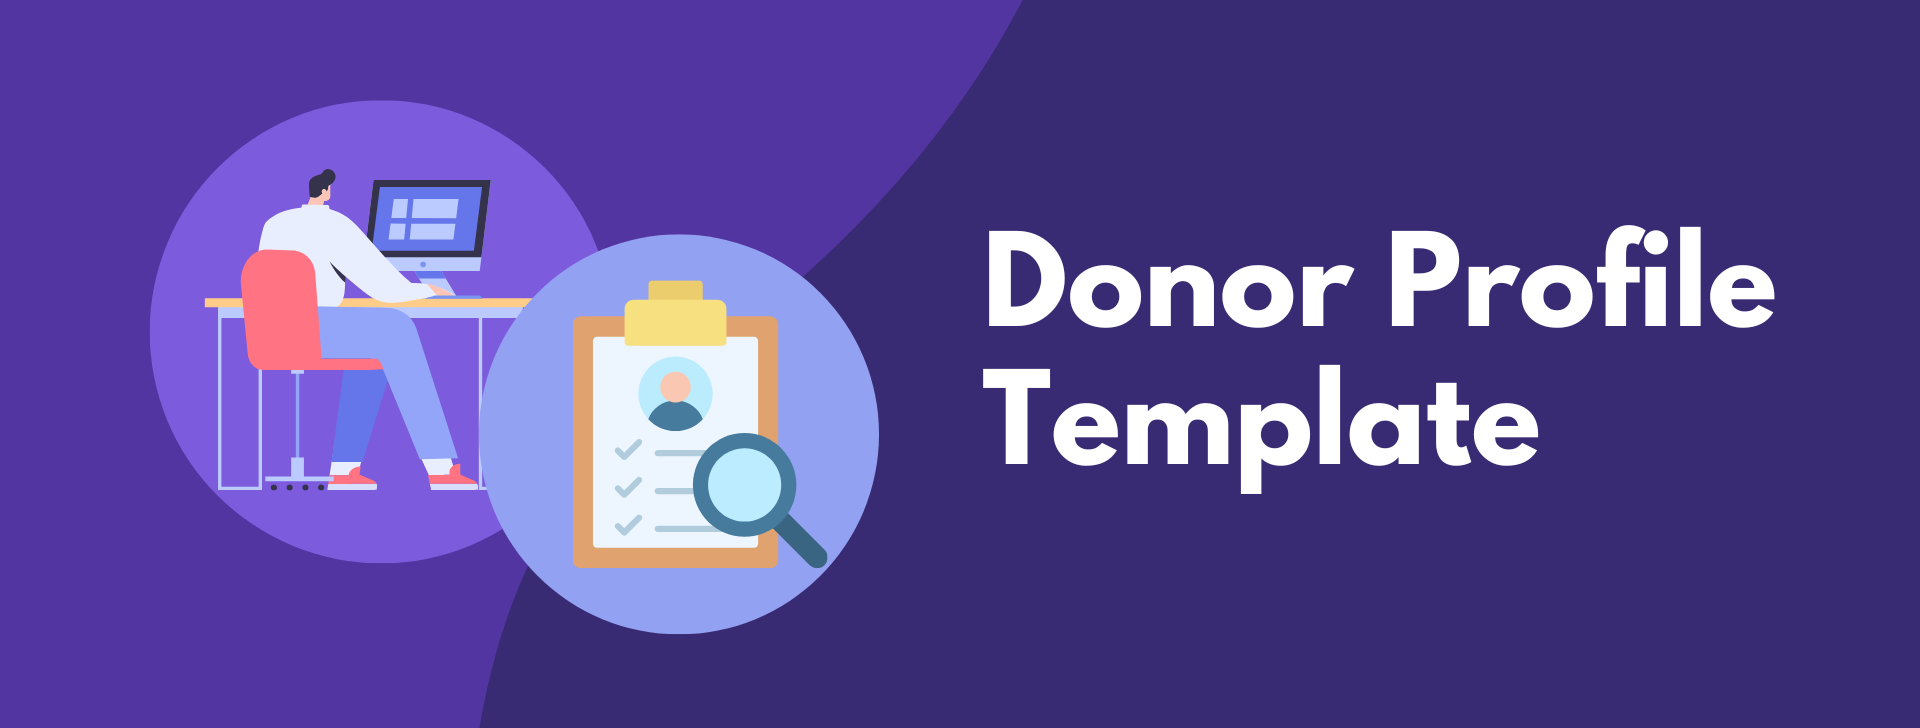 Donor Profile Template